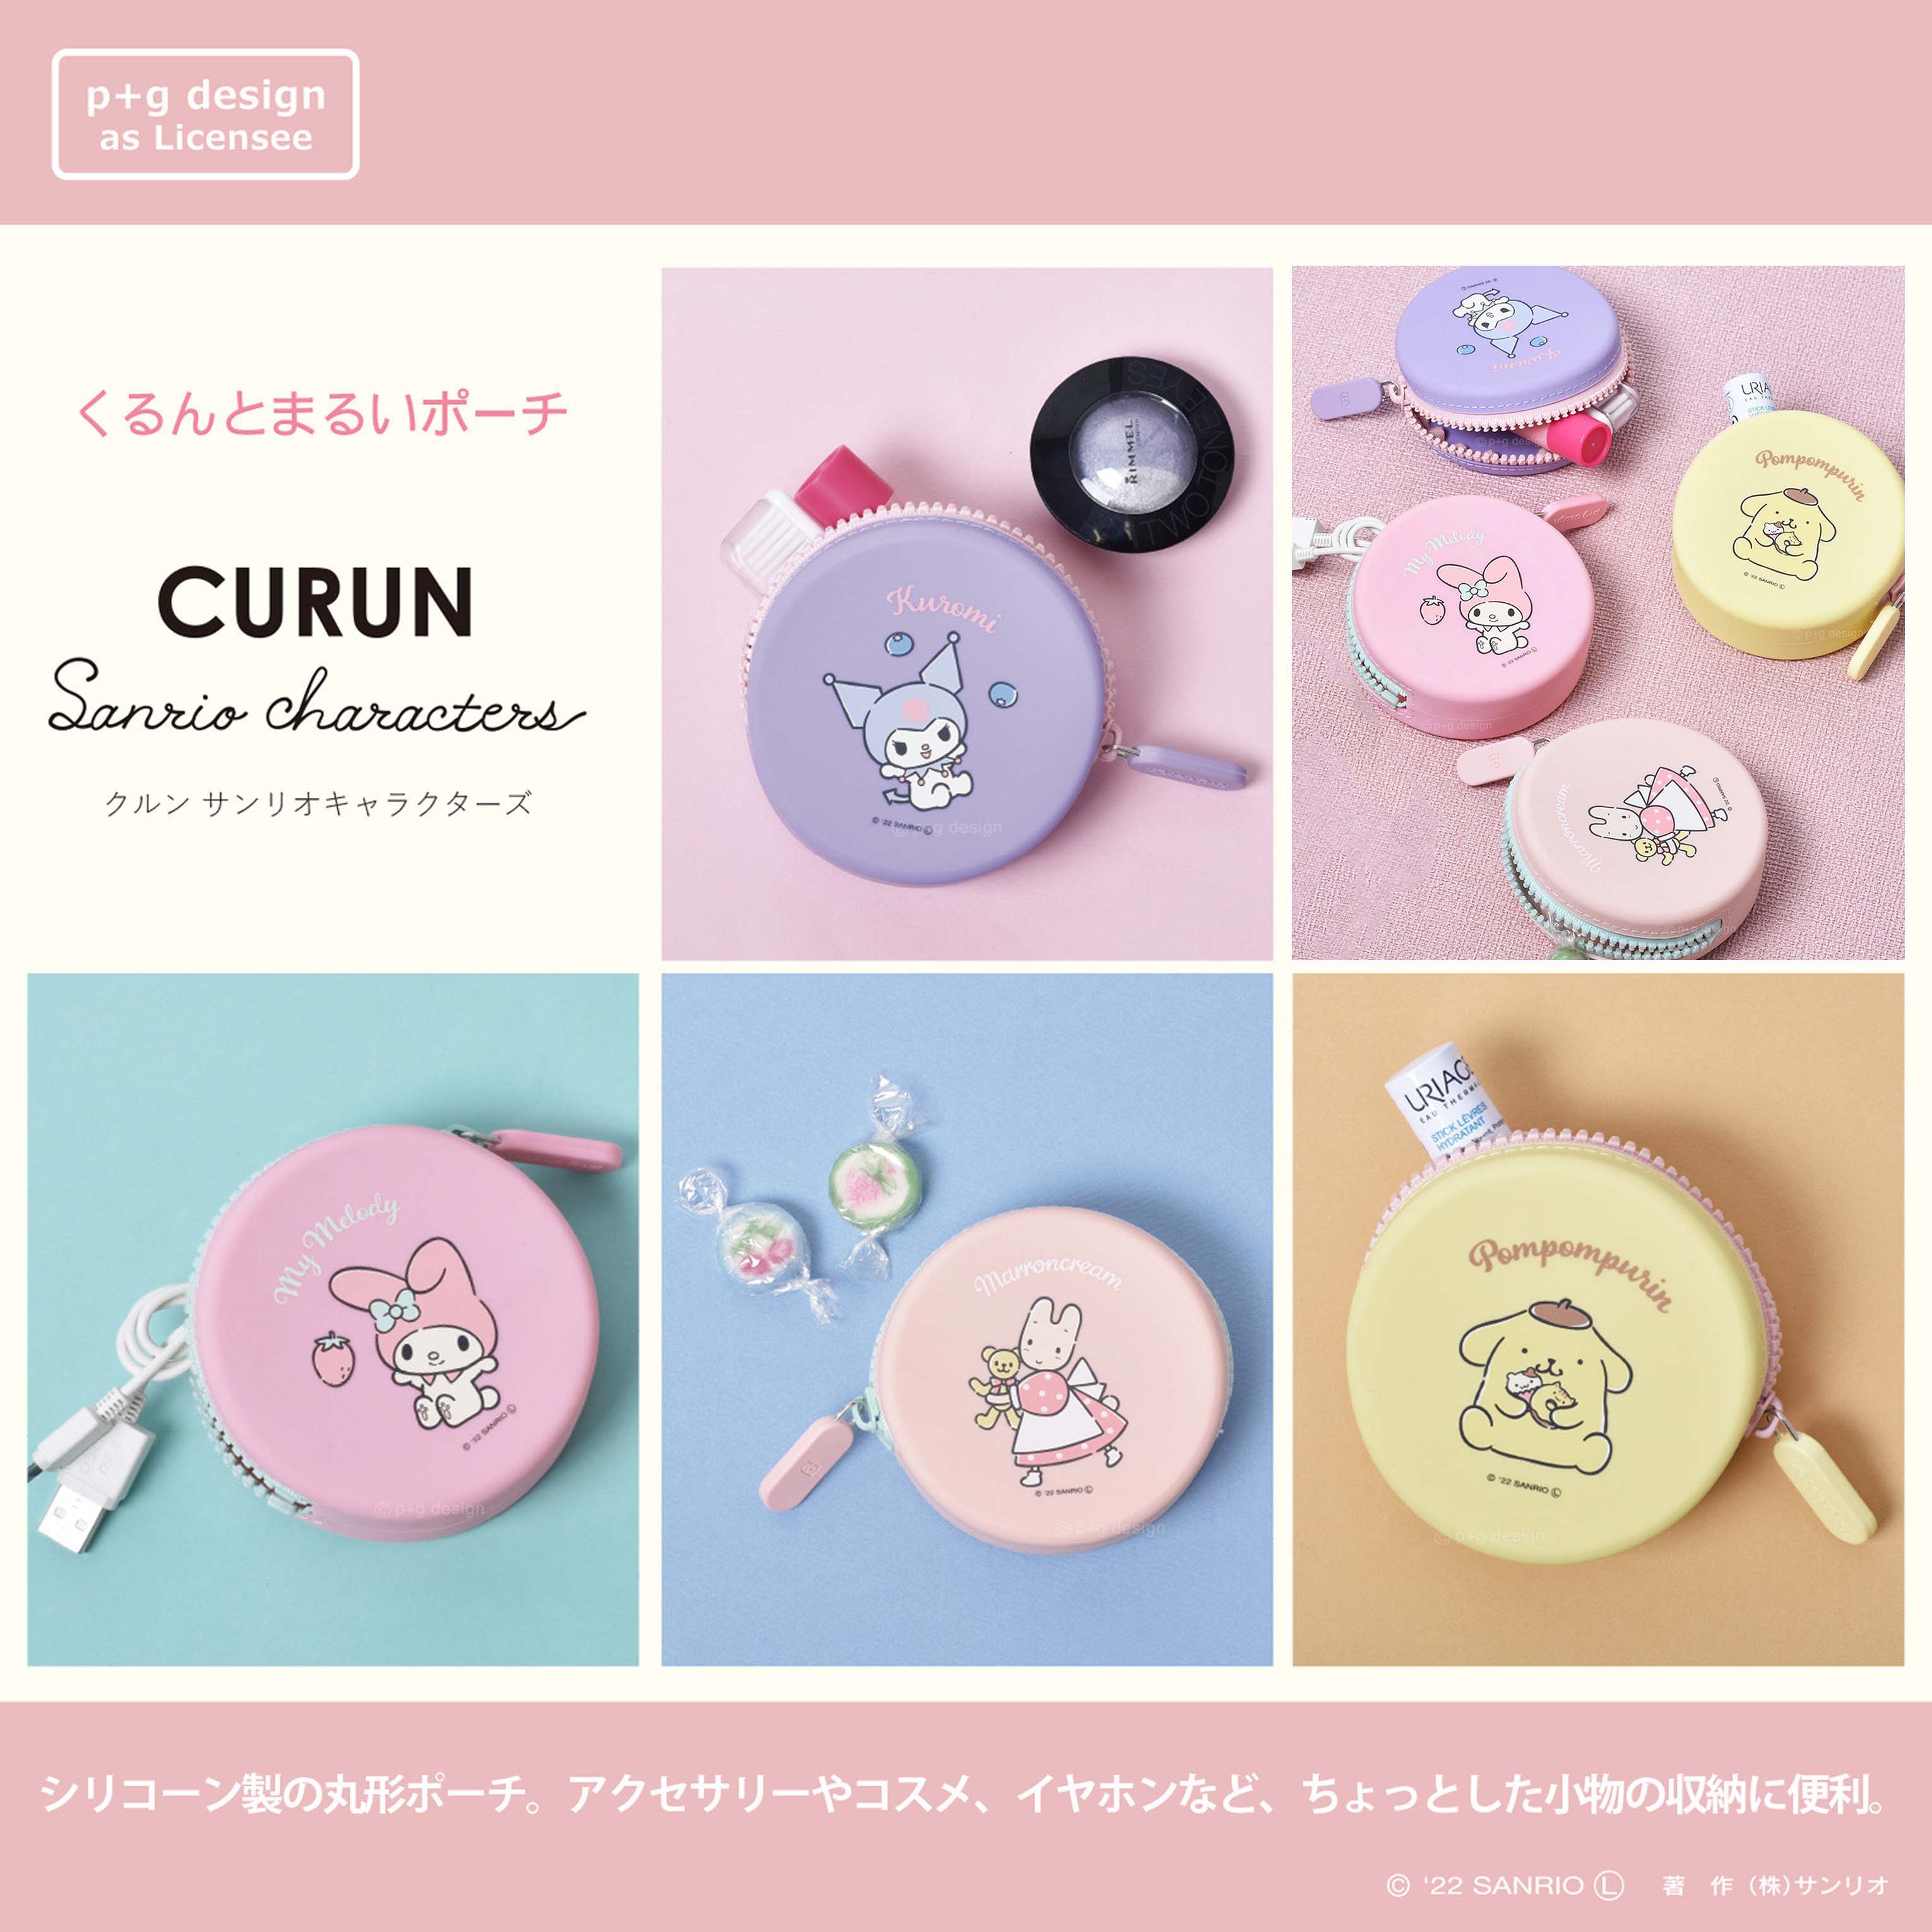 圓形矽膠零錢包-三麗鷗 Sanrio 日本進口正版授權